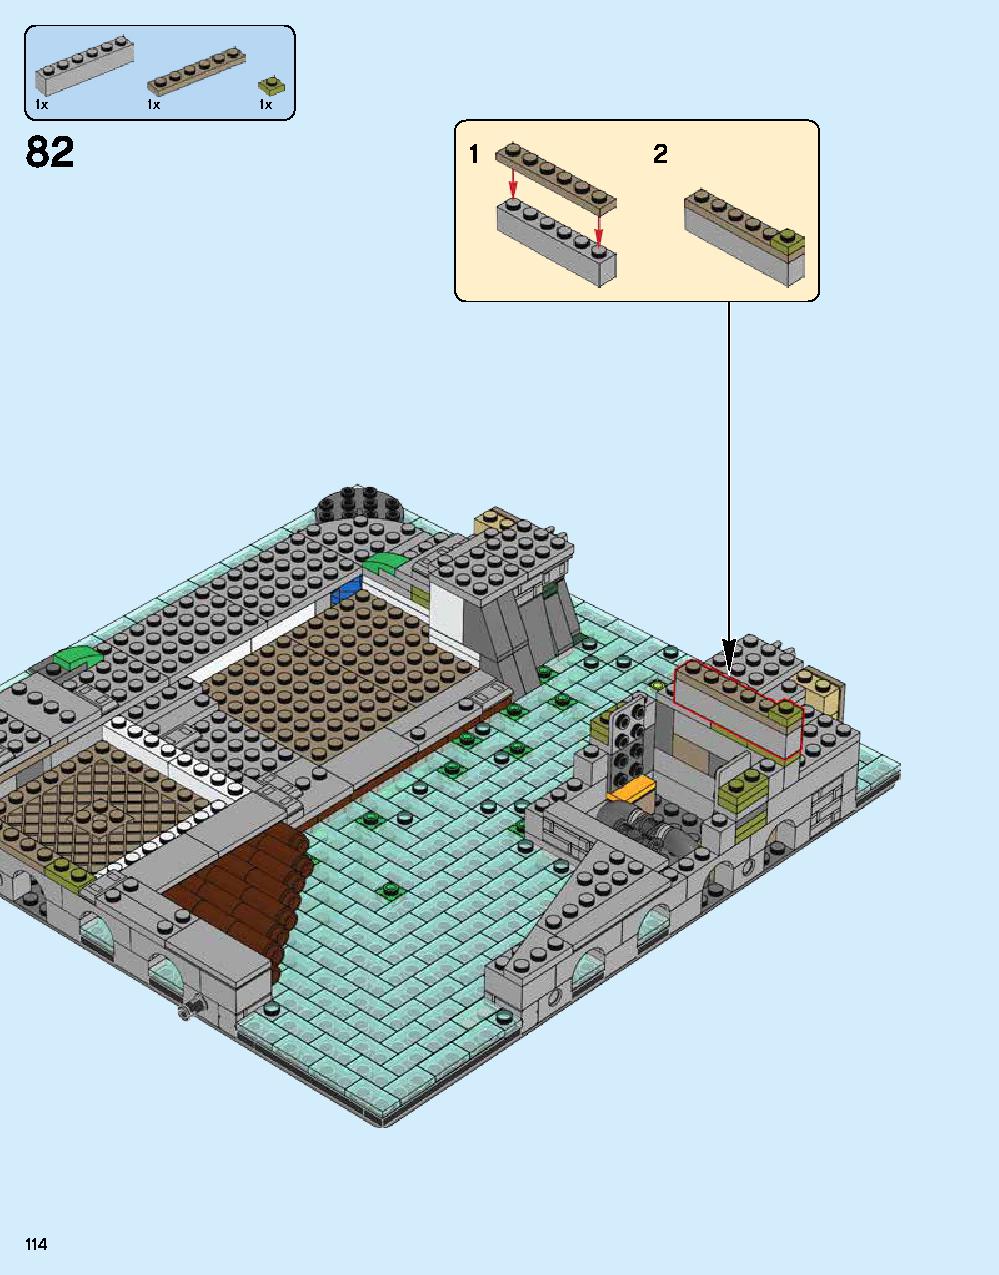 ニンジャゴー シティ 70620 レゴの商品情報 レゴの説明書・組立方法 114 page